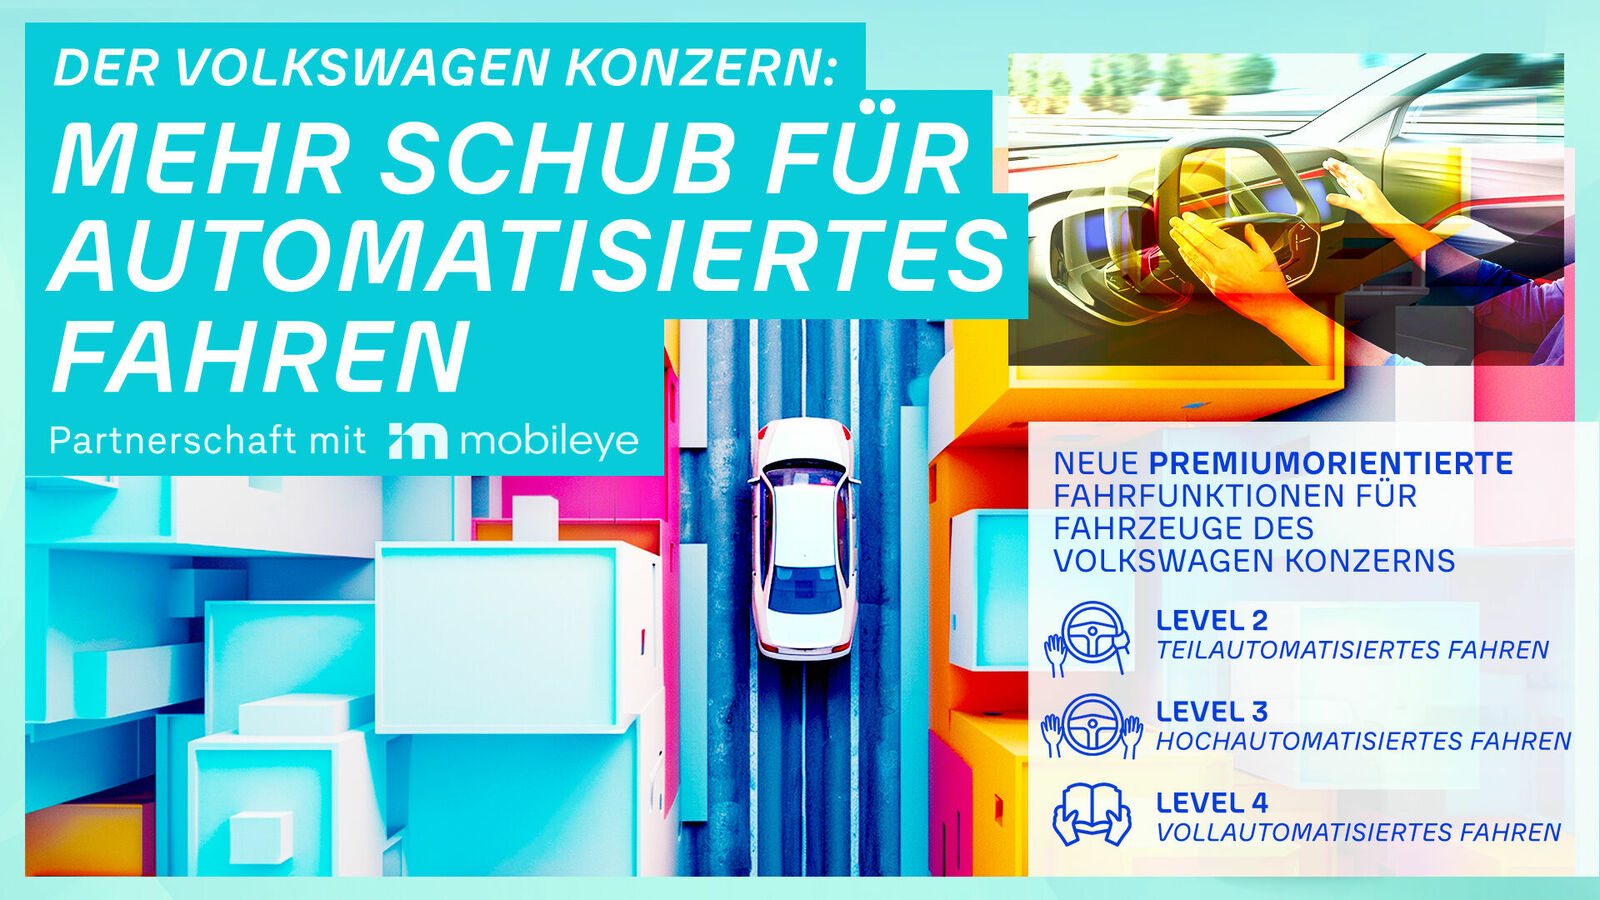 Werbebanner von Volkswagen mit Schwerpunkt auf automatisiertes Fahren und Partnerschaft mit Mobileye.